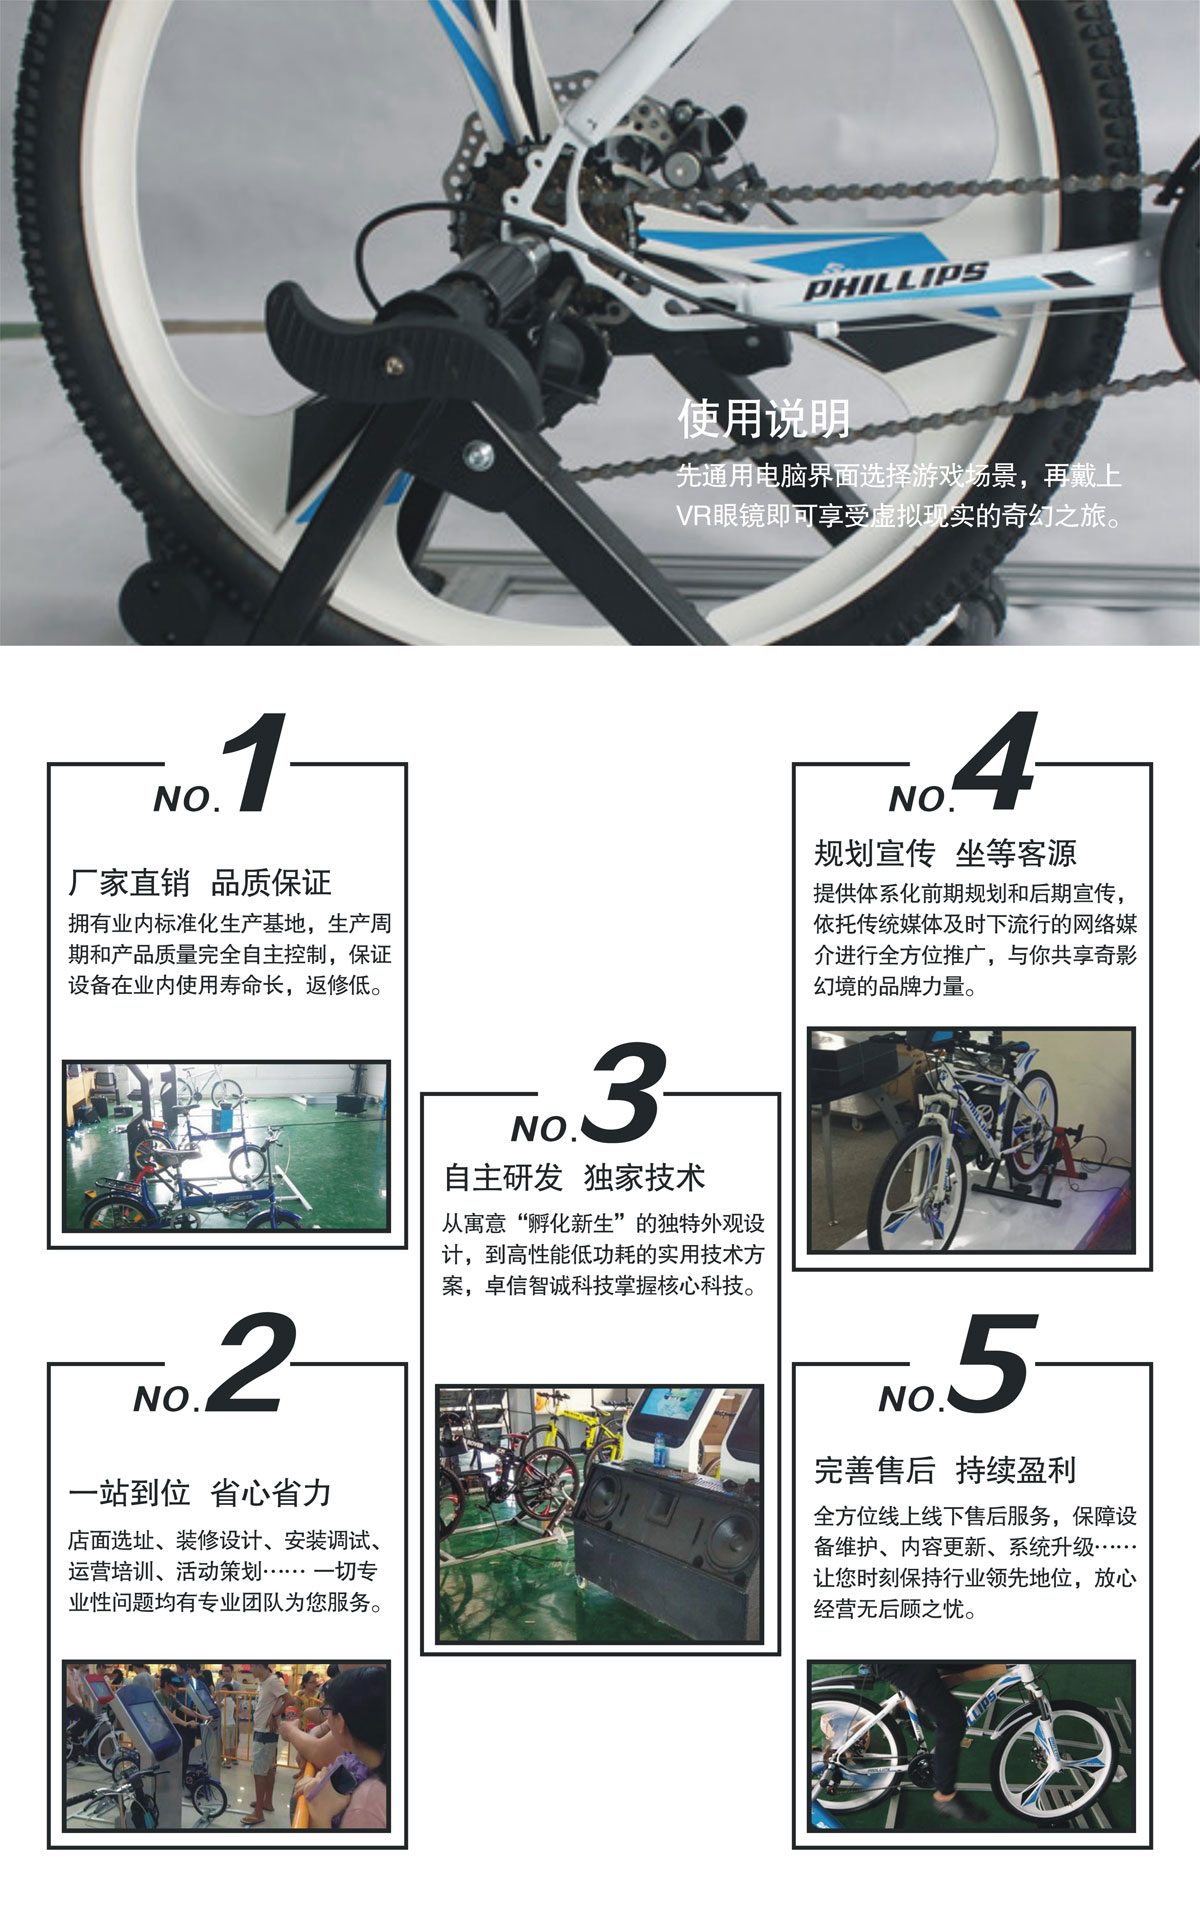 球幕影院VR自行车使用说明.jpg